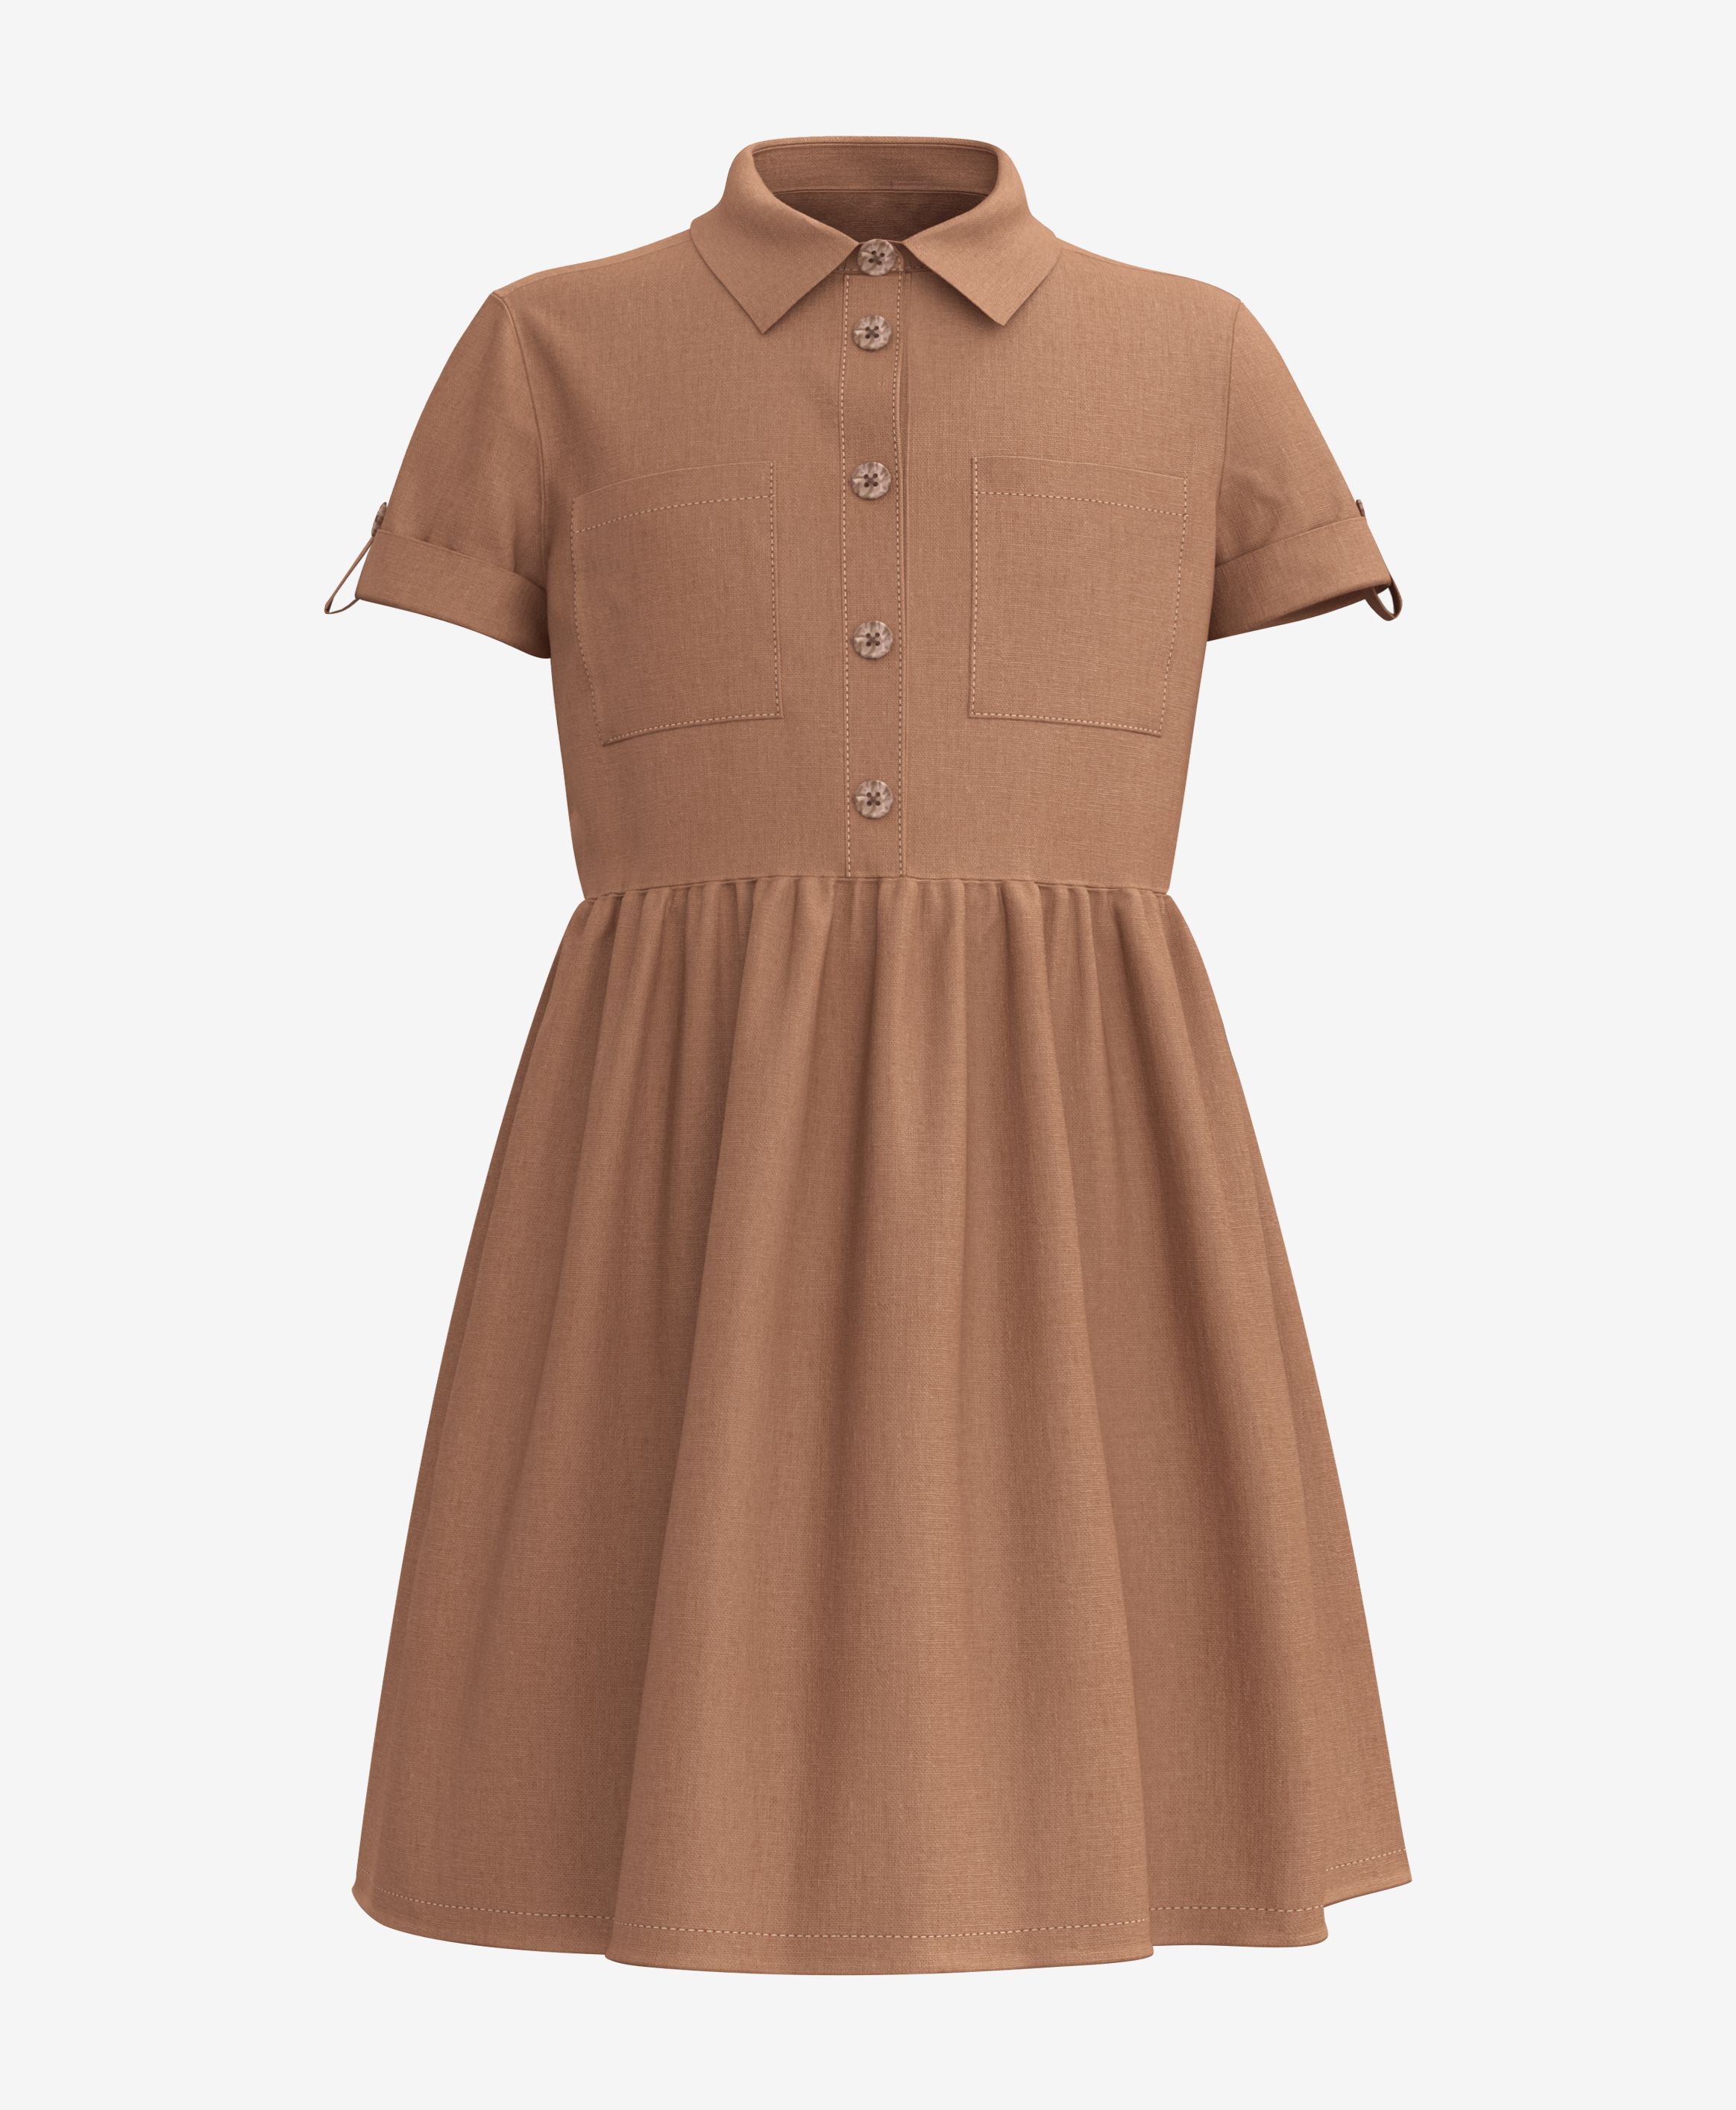 Kleid, 100% Baumwolle, für Mädchen, braun, 104-134 cm